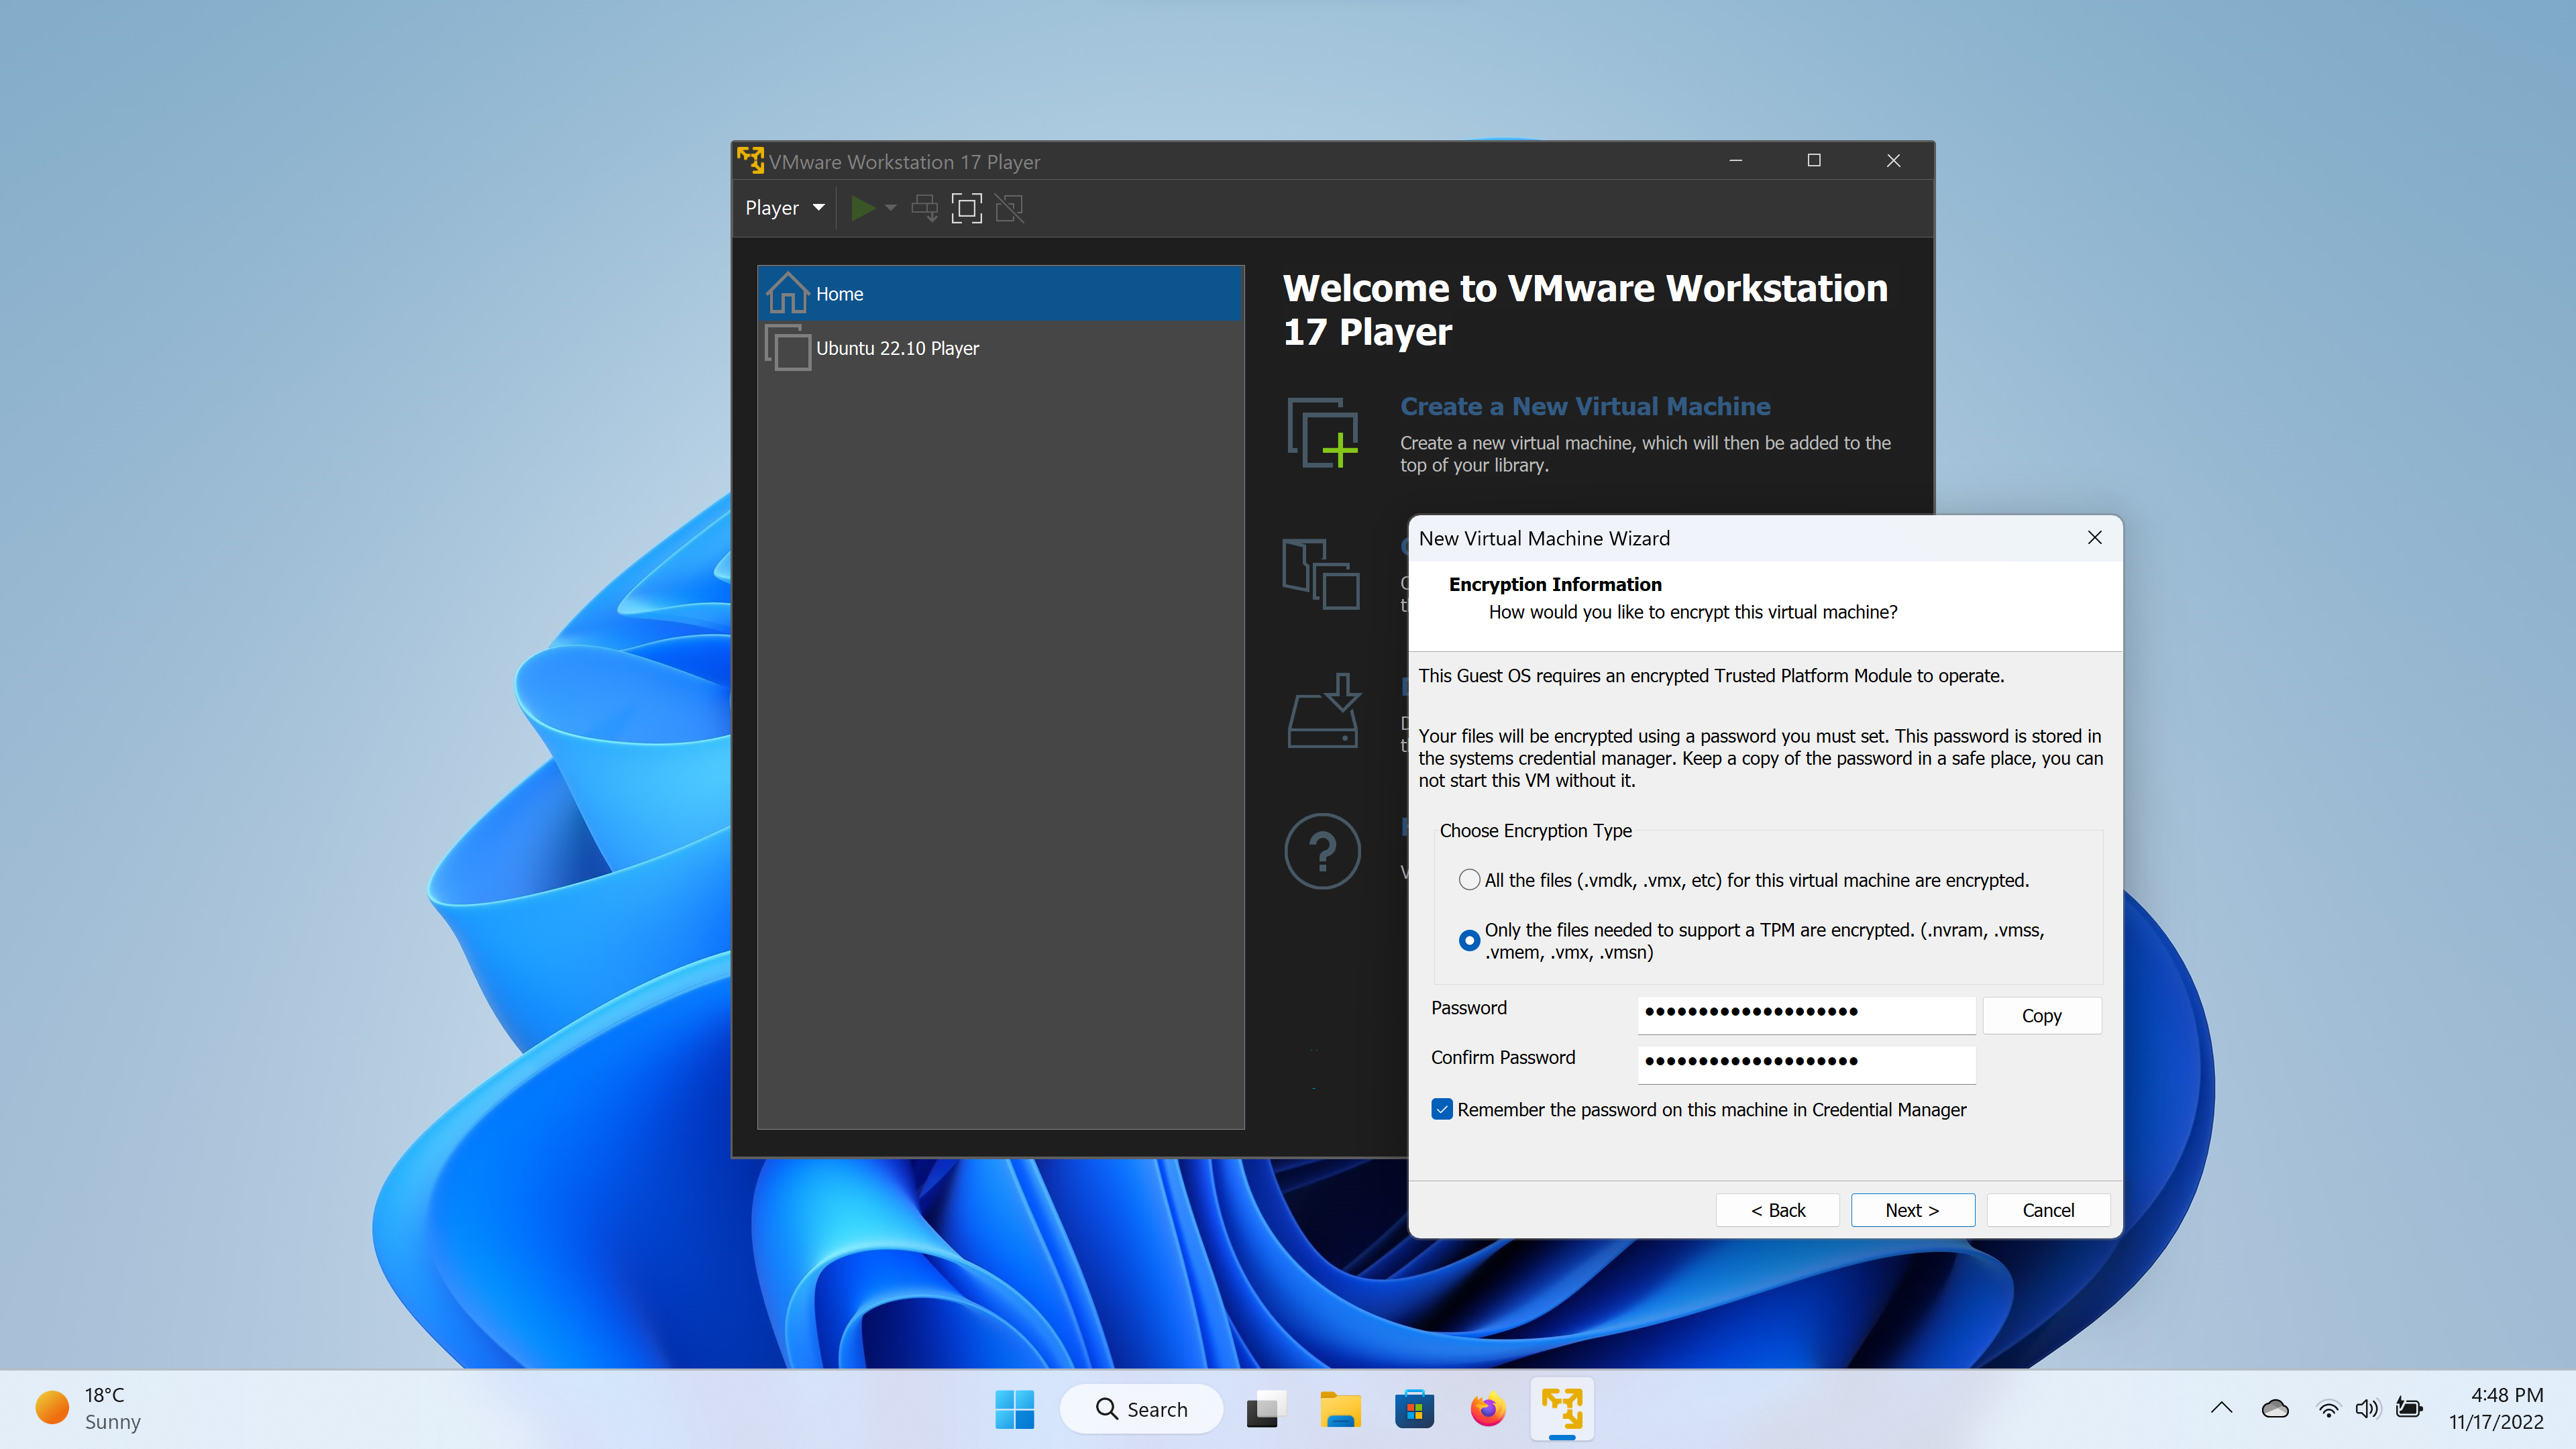 ポリカーボネイト製キッチンポット VMware Workstation 17 Pro 100